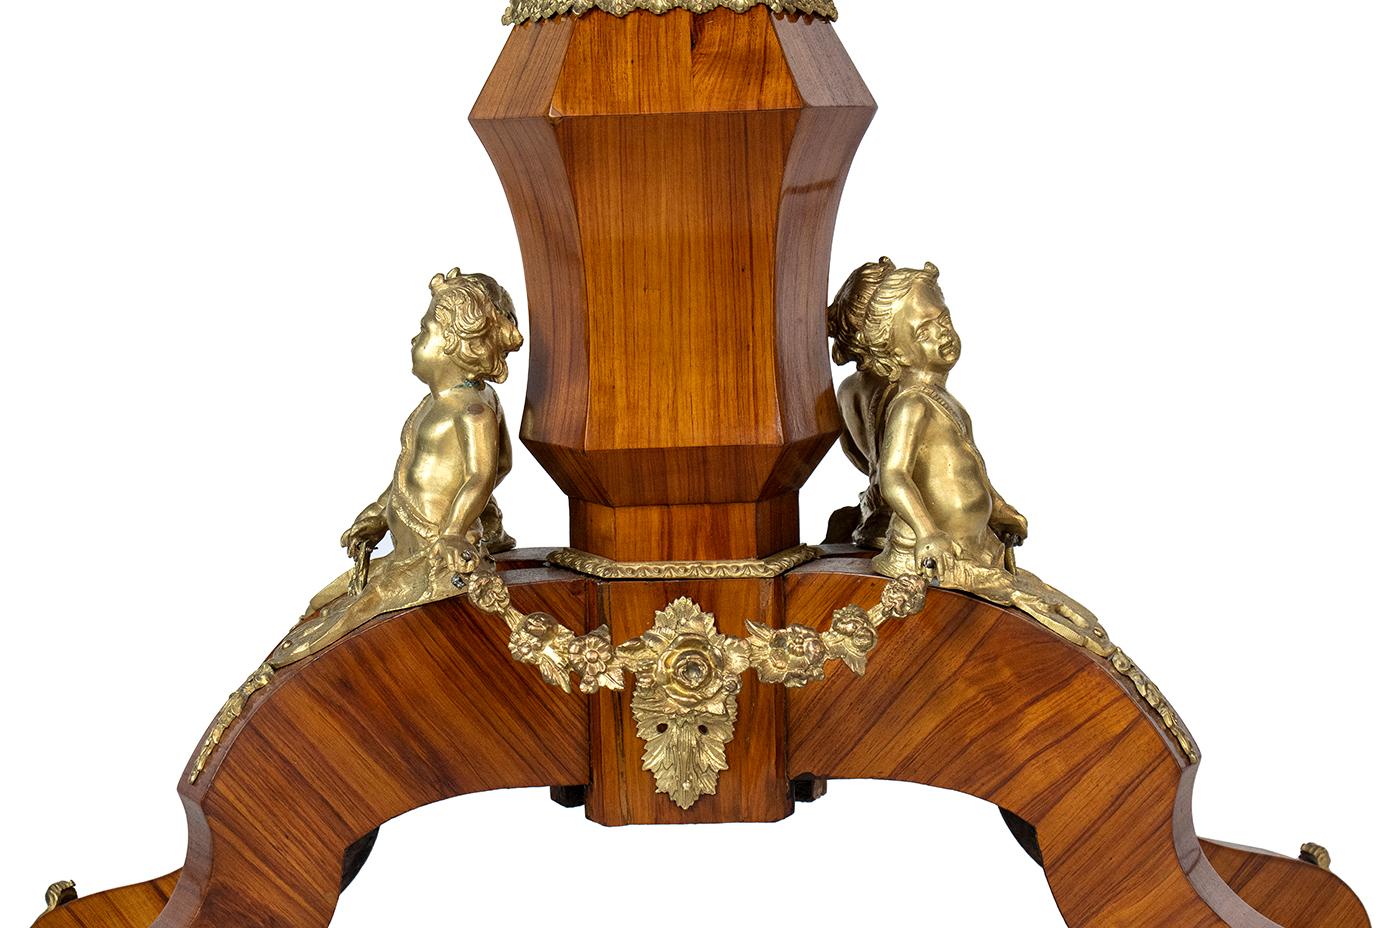 Milieu du XIXe siècle 19ème siècle France Napoléon III° Table centrale en bois de roi et bronze doré 